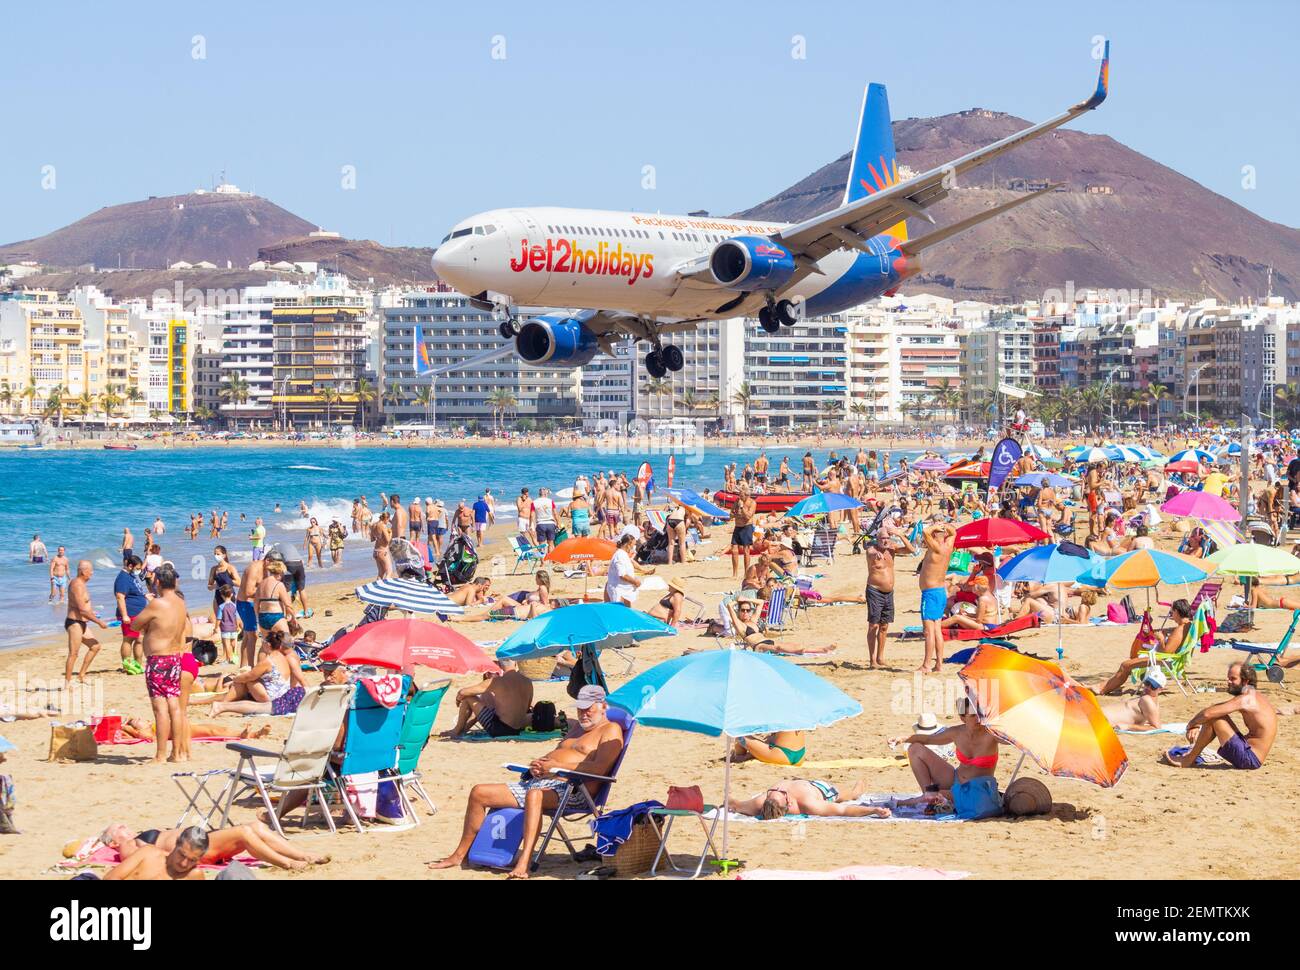 Composite-Bild von Jet2.com Flugzeugen, die über den Strand von Las canteras in Las Palmas auf Gran Canaria, Kanarische Inseln, Spanien fliegen. Stockfoto